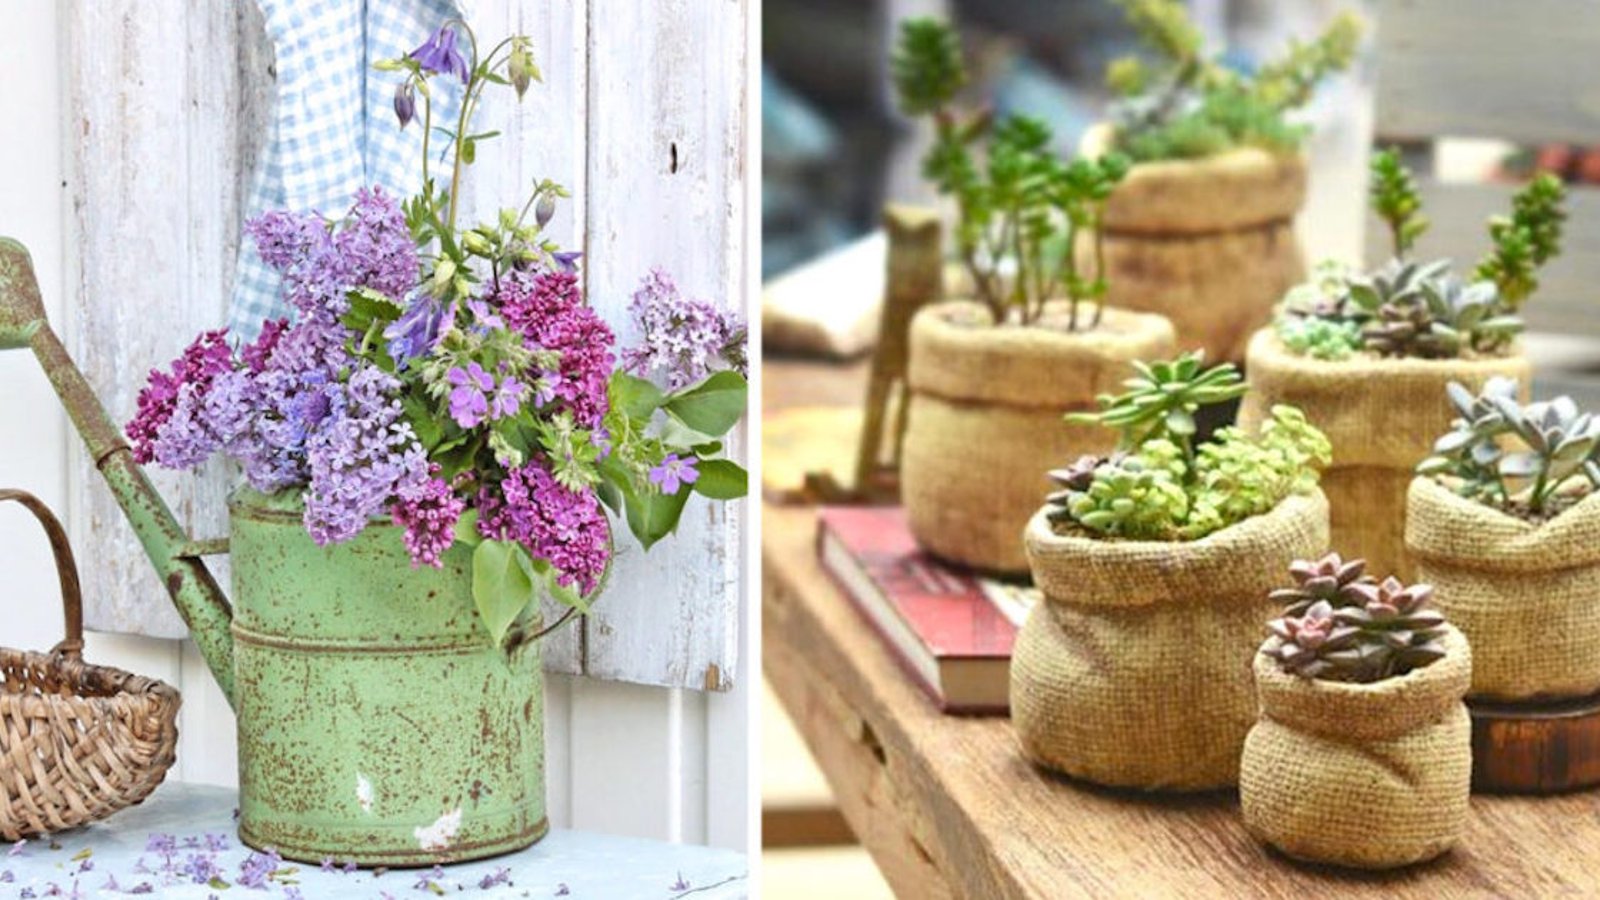 C'est tendance: des pots à fleurs qui n'en sont pas!